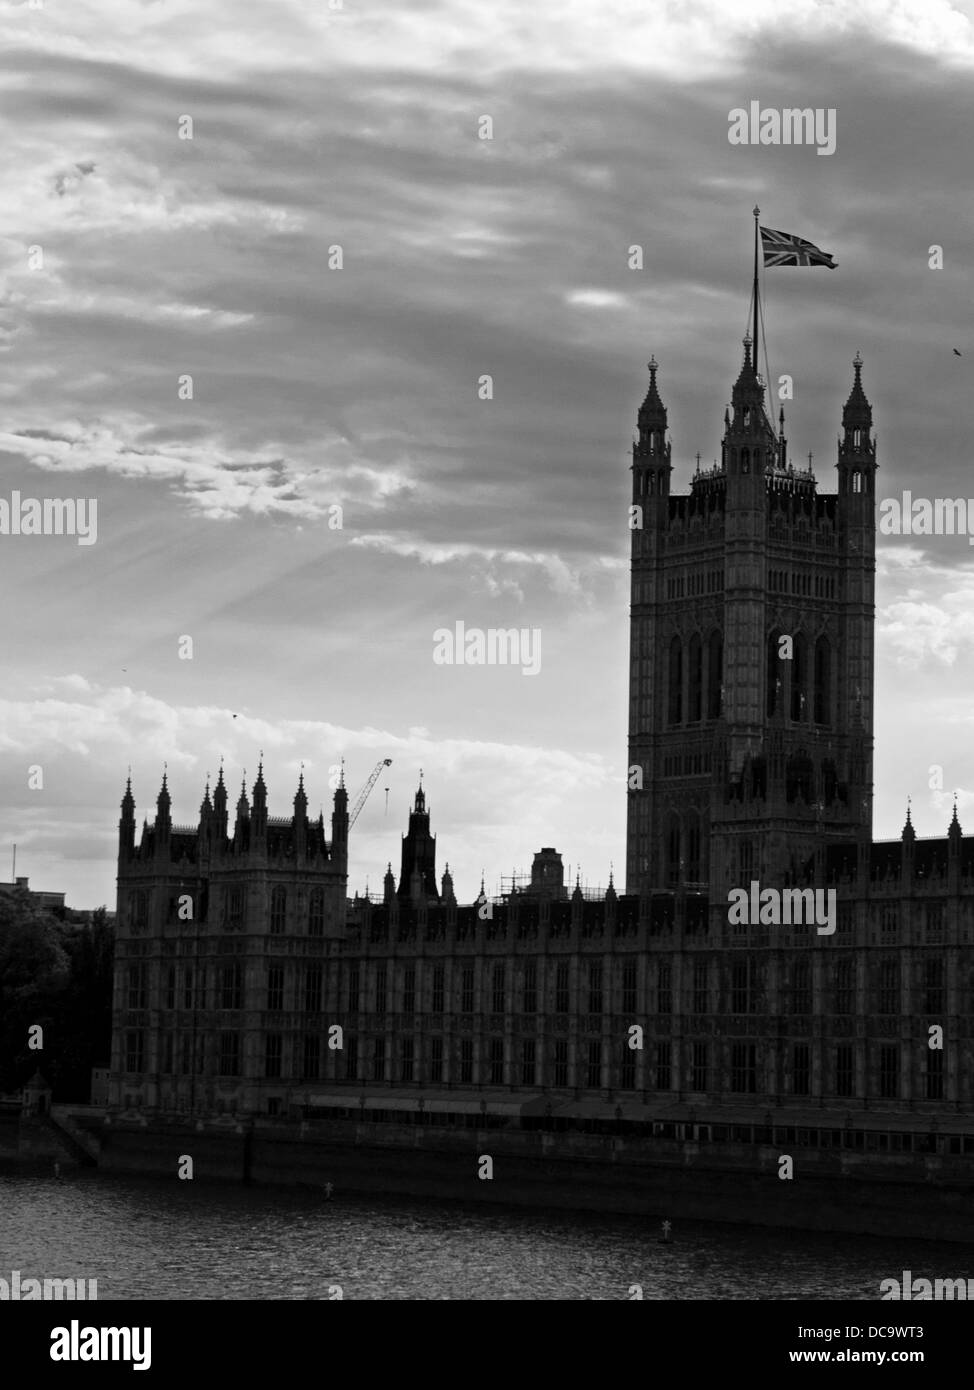 Vue de la Tour Victoria au sud-ouest du Palais de Westminster (Parlement), City of Westminster Banque D'Images